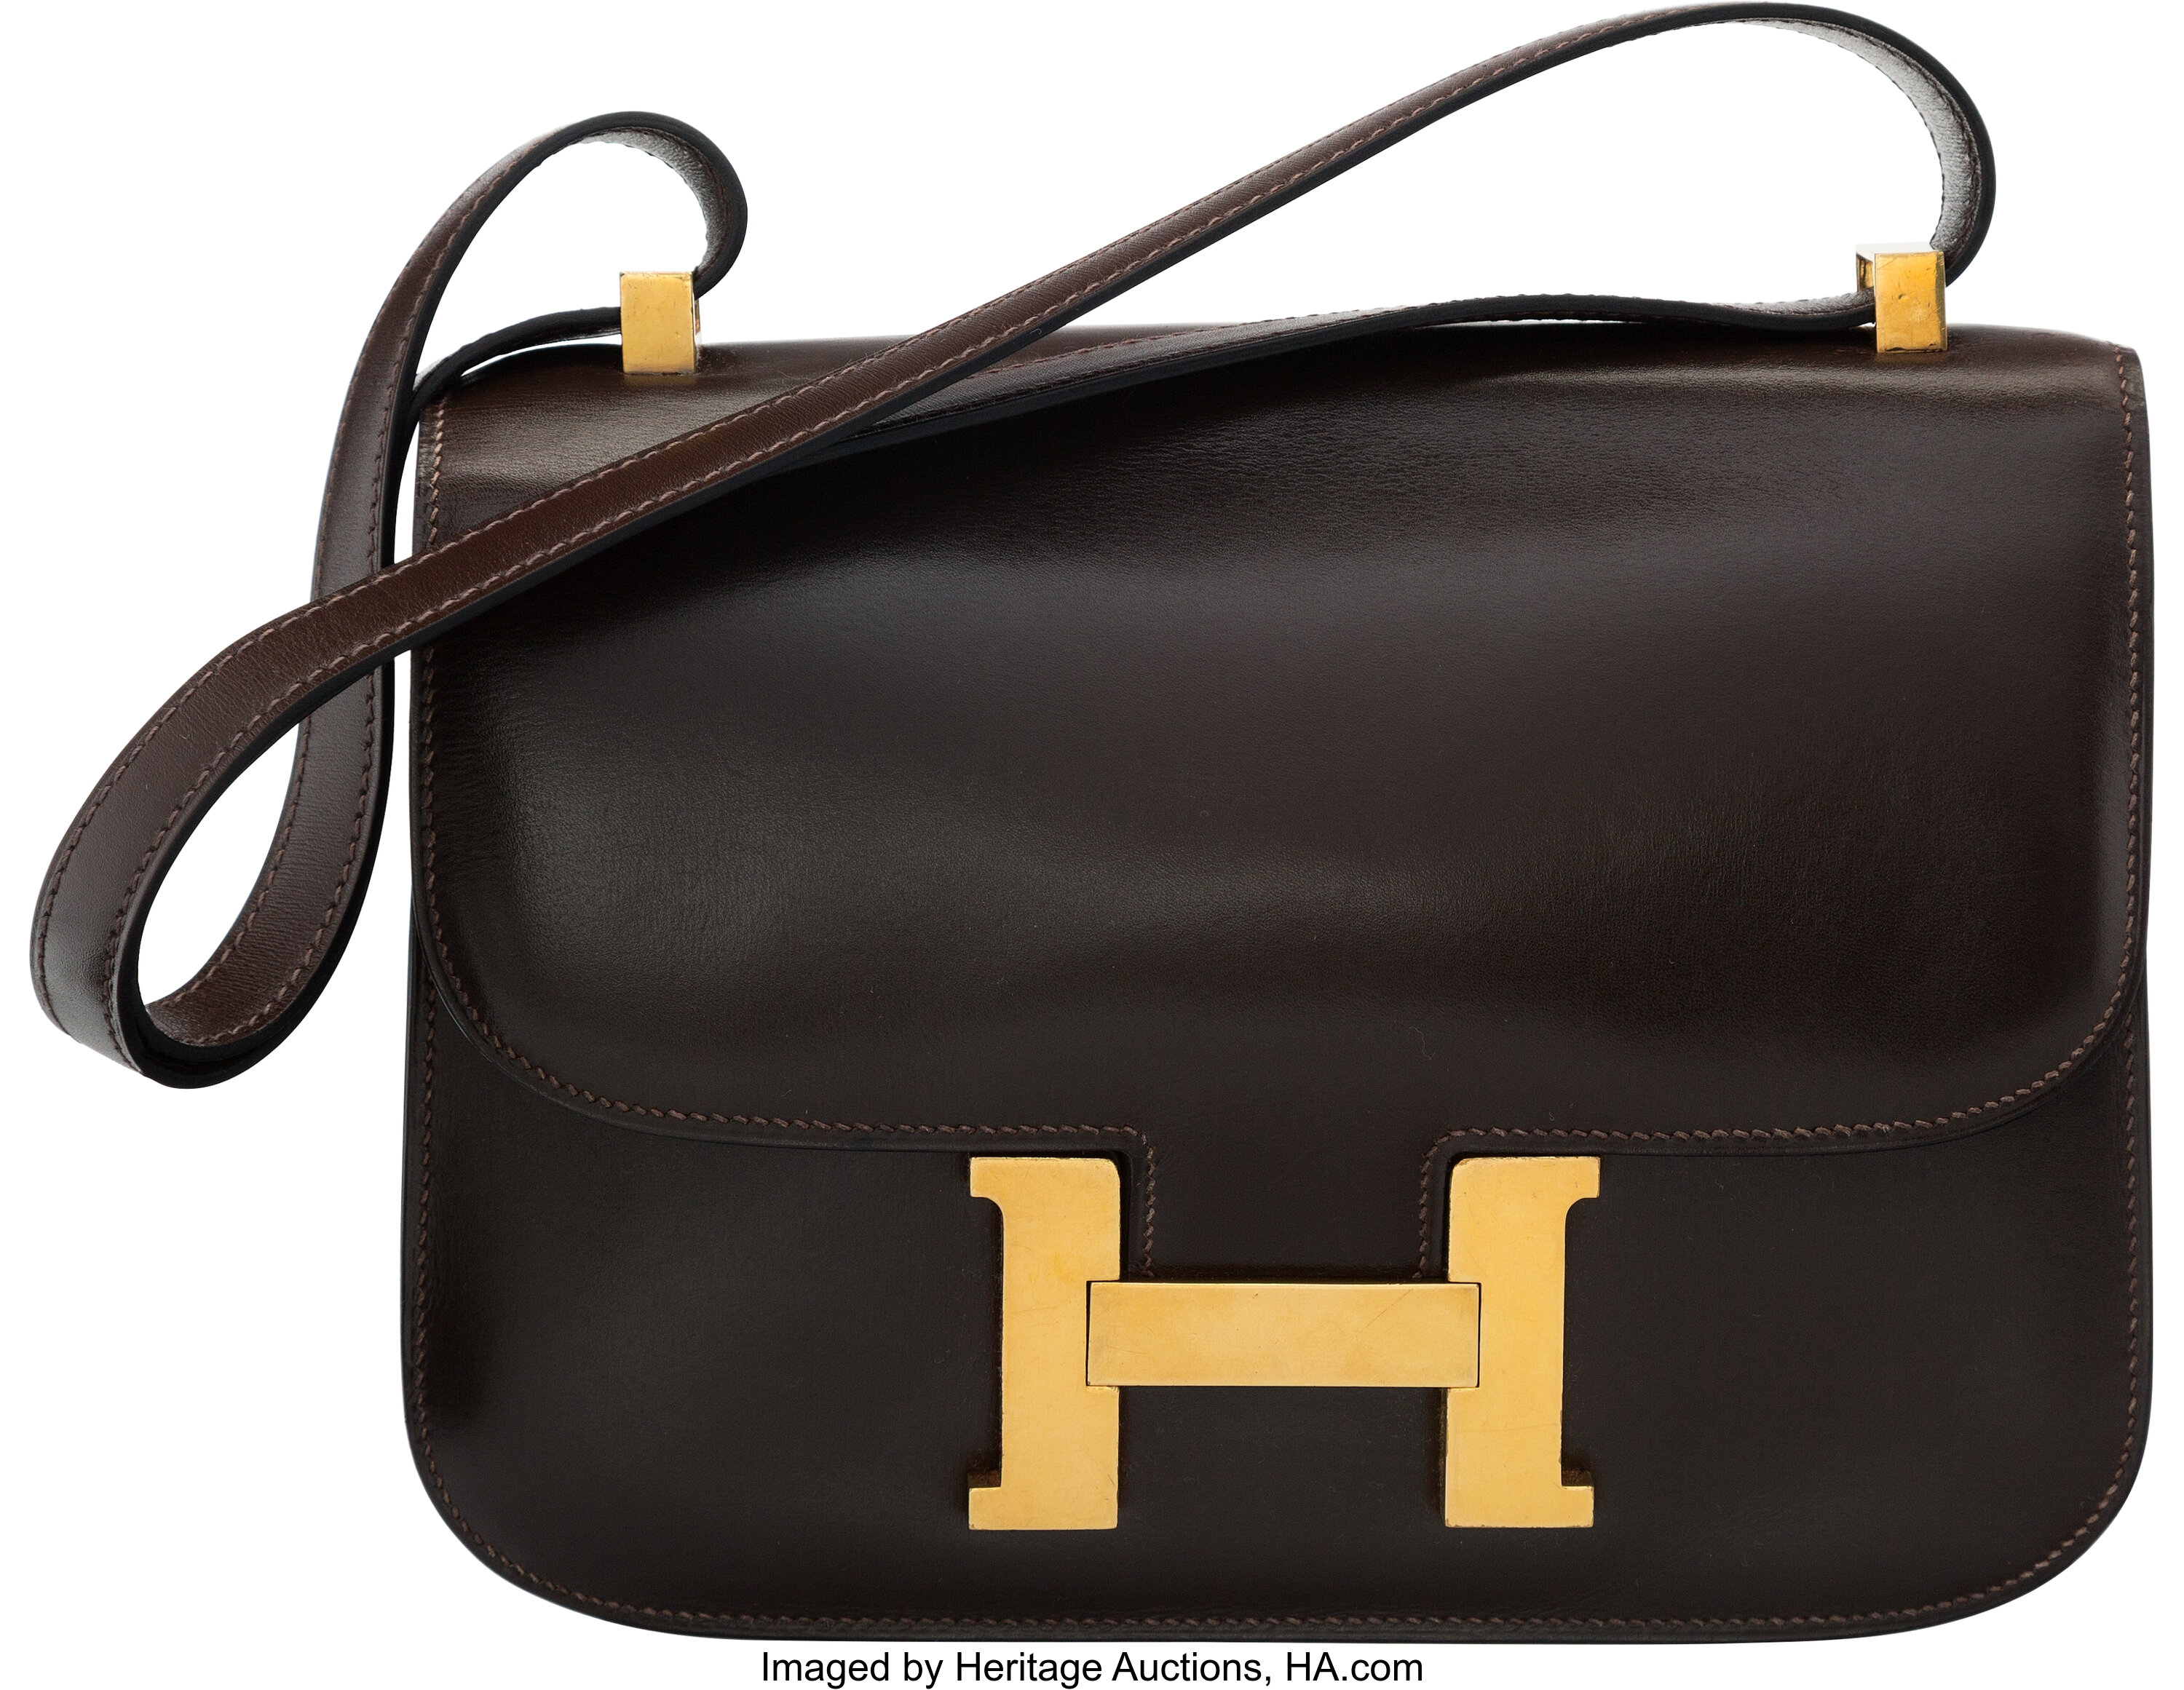 At Auction: Hermes Black Epsom Leather Evelyne I PM Messenger Bag